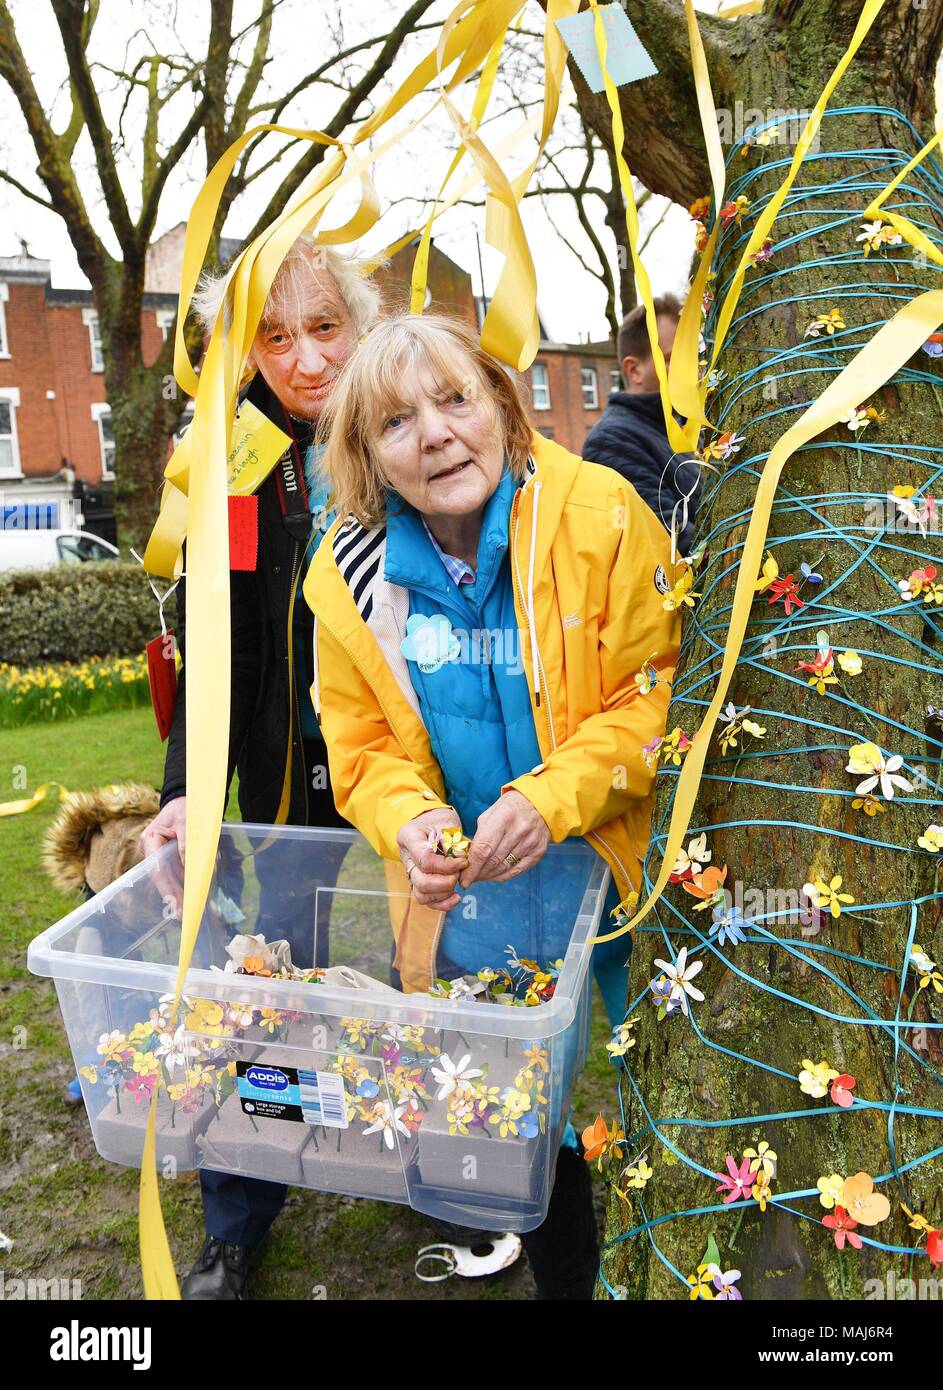 John et Barbara Ratcliffe, les parents de Richard Ratcliffe, aider à décorer un arbre à Fortune Green à West Hampstead, Londres, sur la 2ème anniversaire Zaghari-Ratcliffe Nazanin en détention en Iran. Banque D'Images